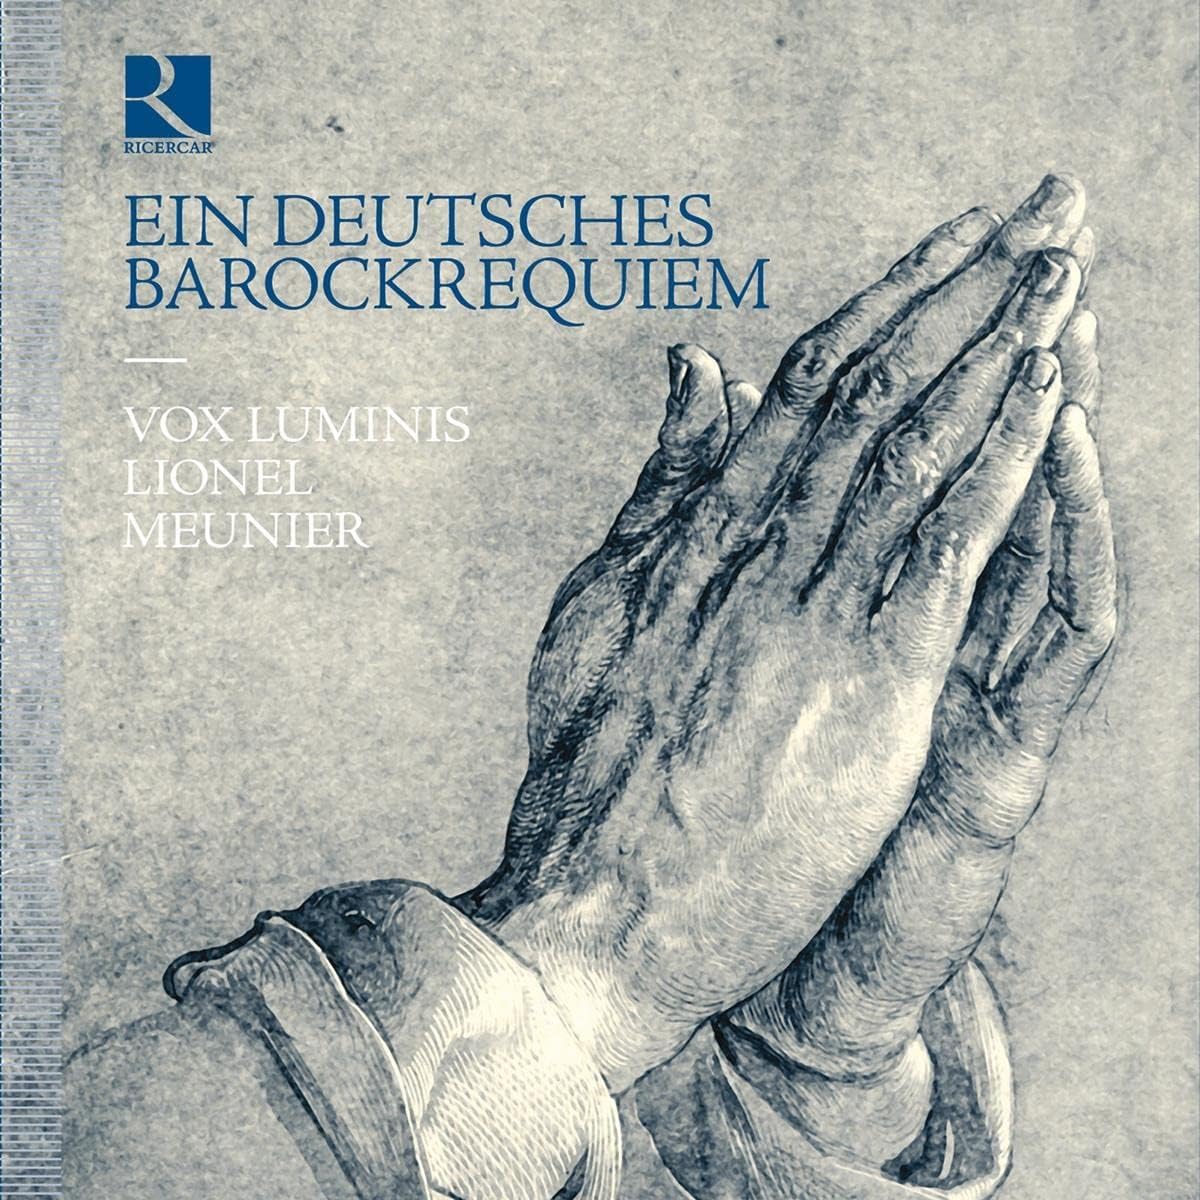 CD cover of Ein Deutsches Barockrequiem Vox Luminis Lionel Meunier